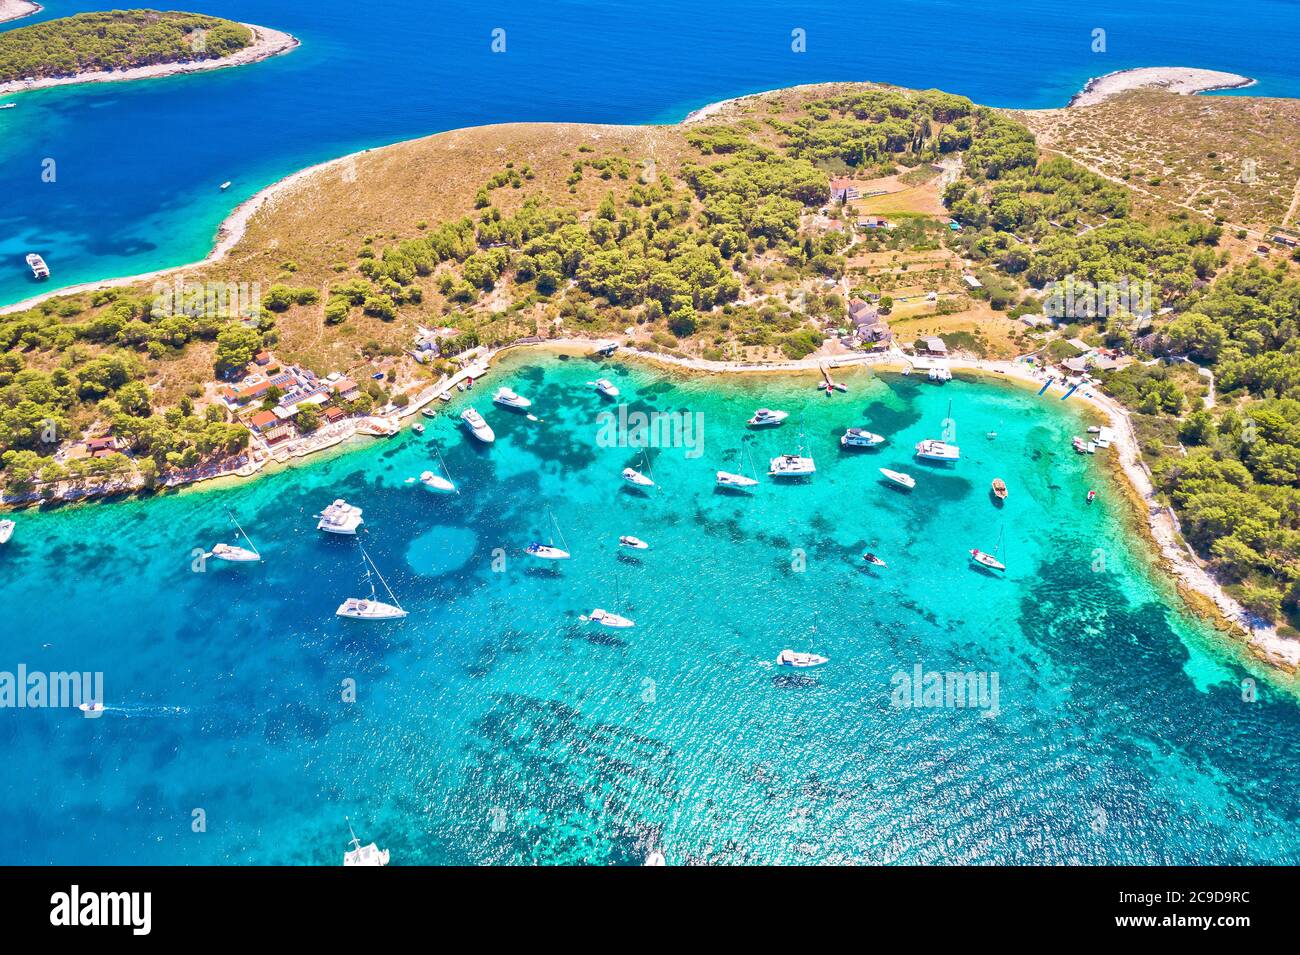 Pakleni otoci navigation destination arcipelago vue aérienne, île de Hvar, région de Dalmatie en Croatie Banque D'Images